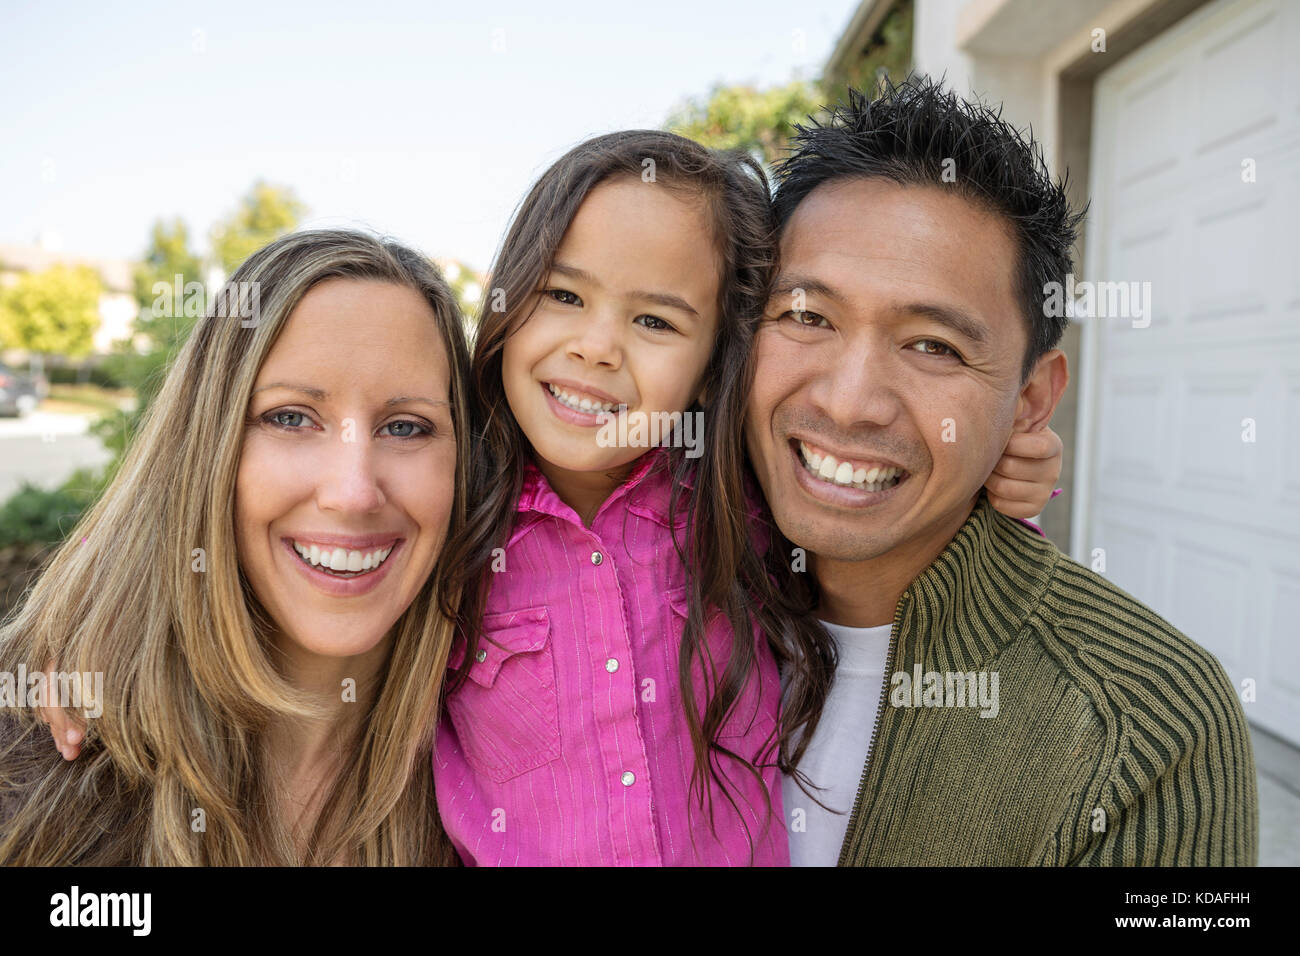 Mixed race family. Stock Photo